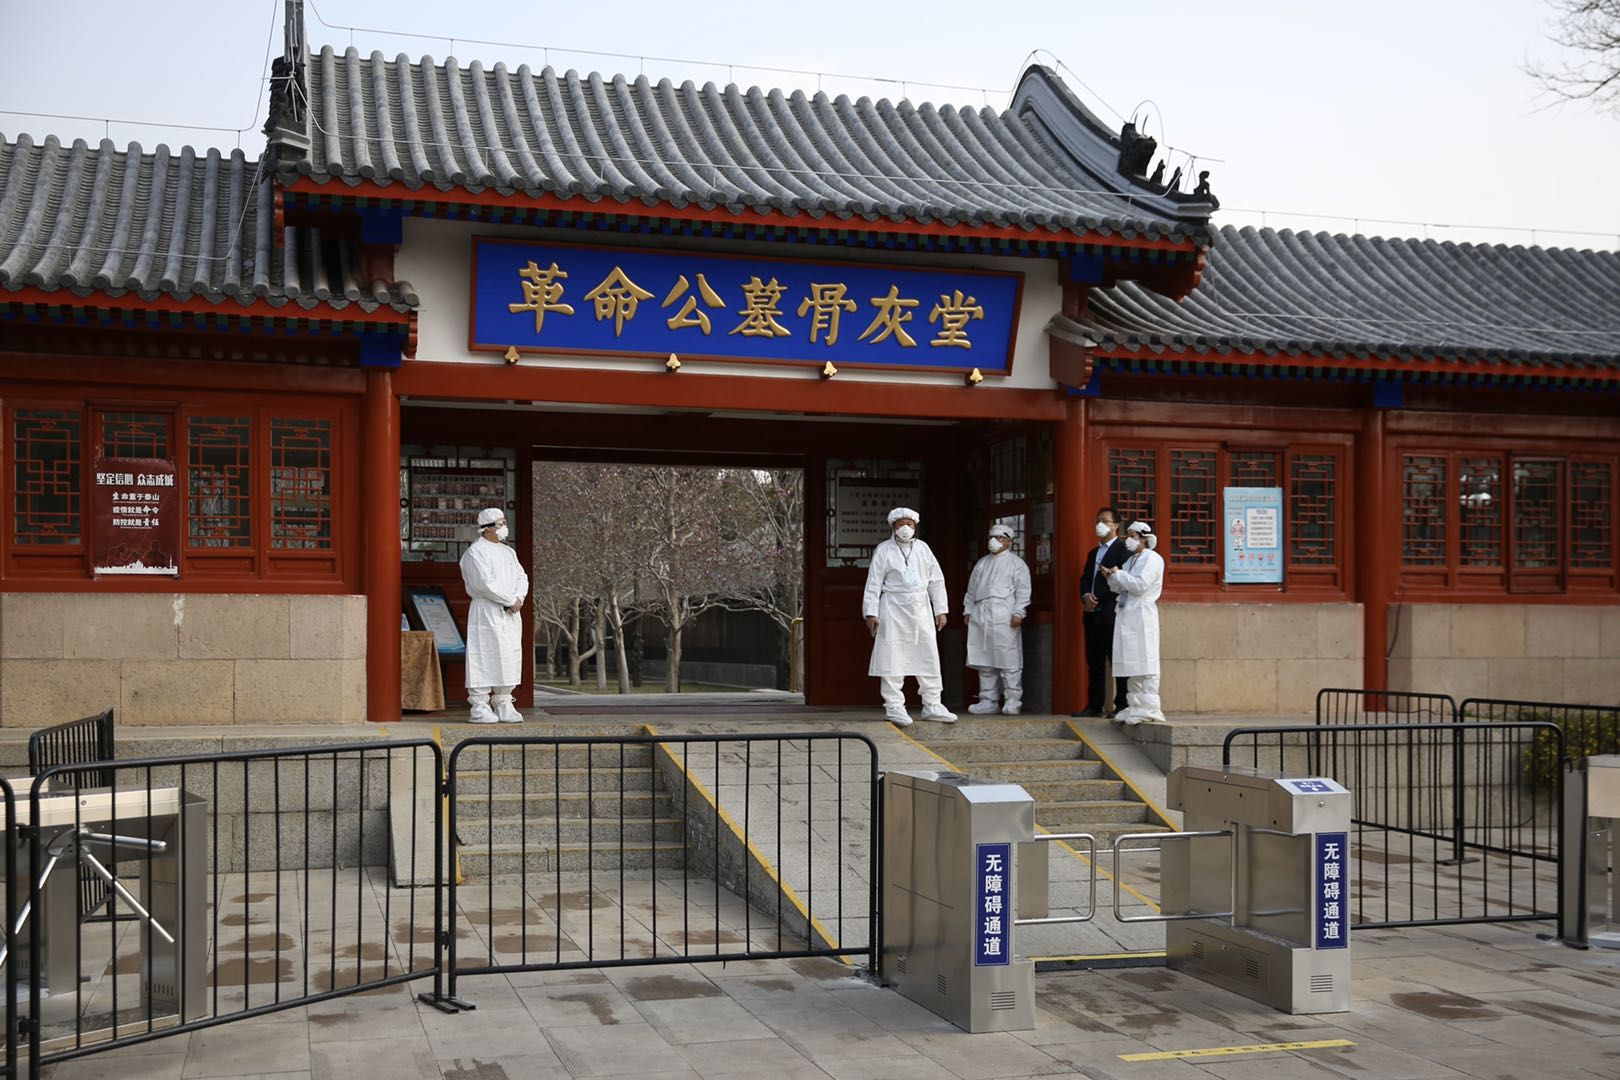 北京八宝山革命公墓首日预约仅3成,外籍人员需查验